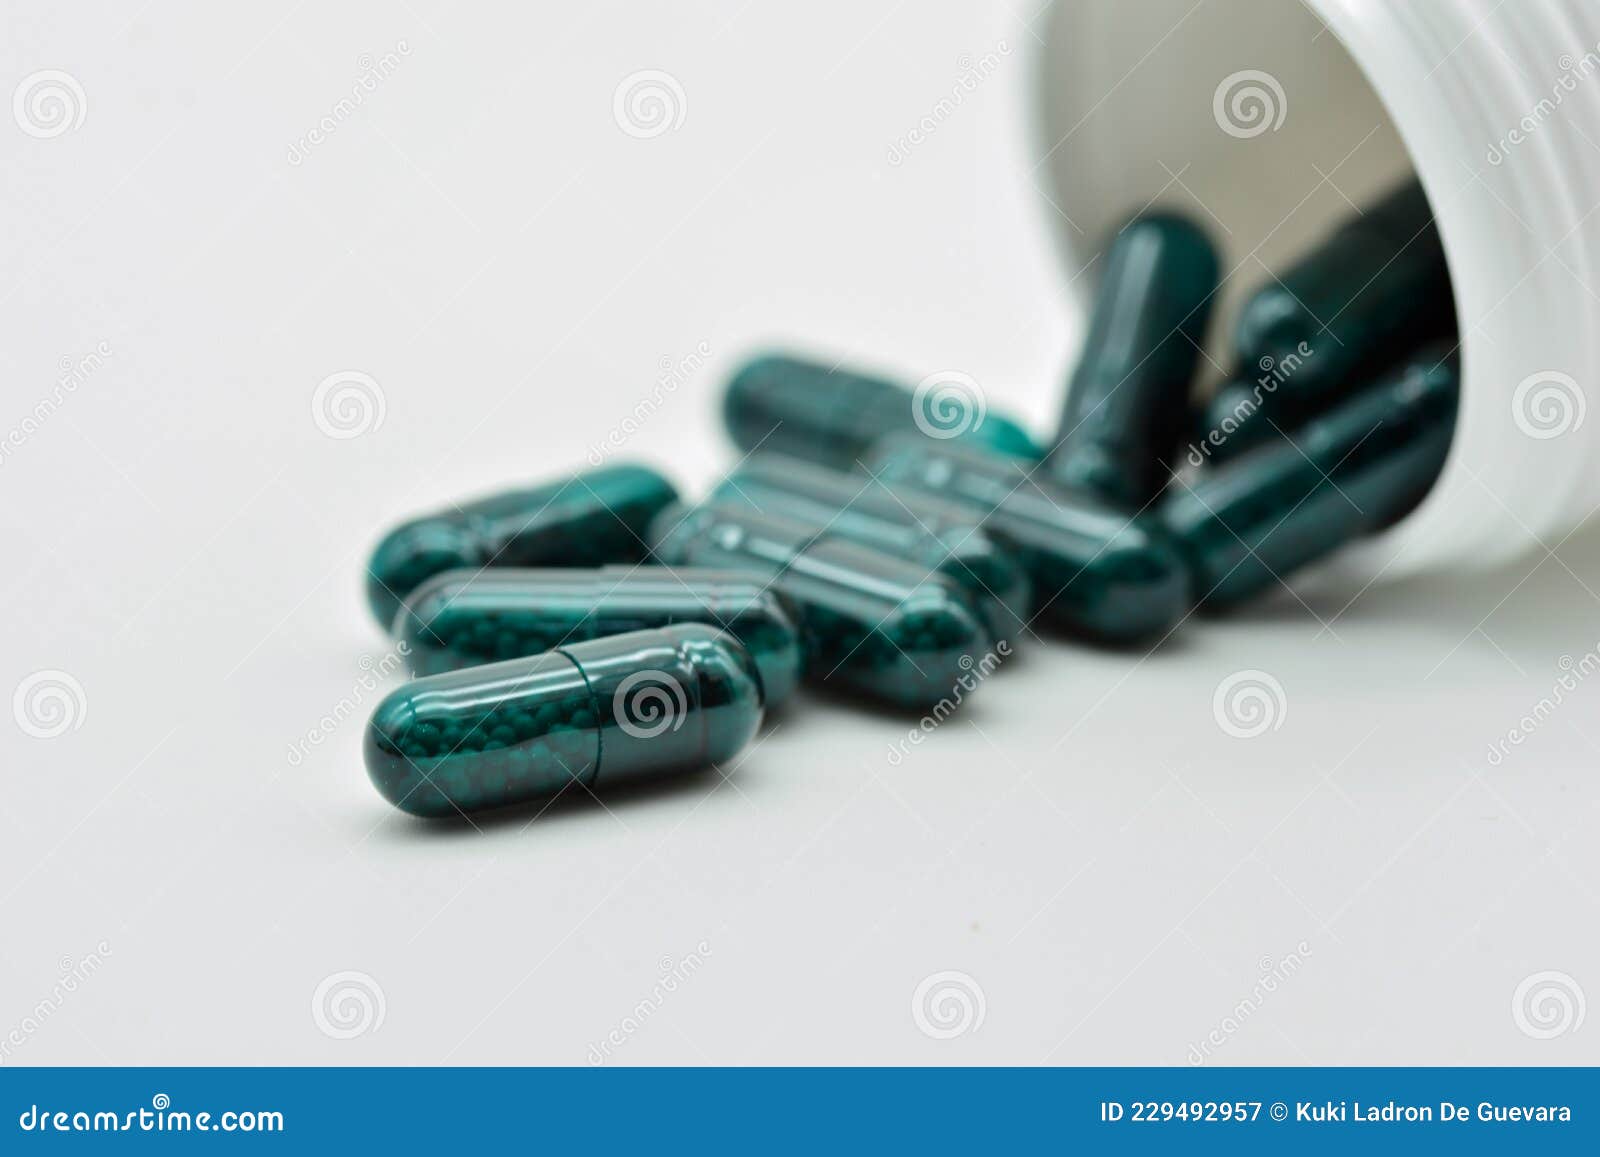 transparent green pills